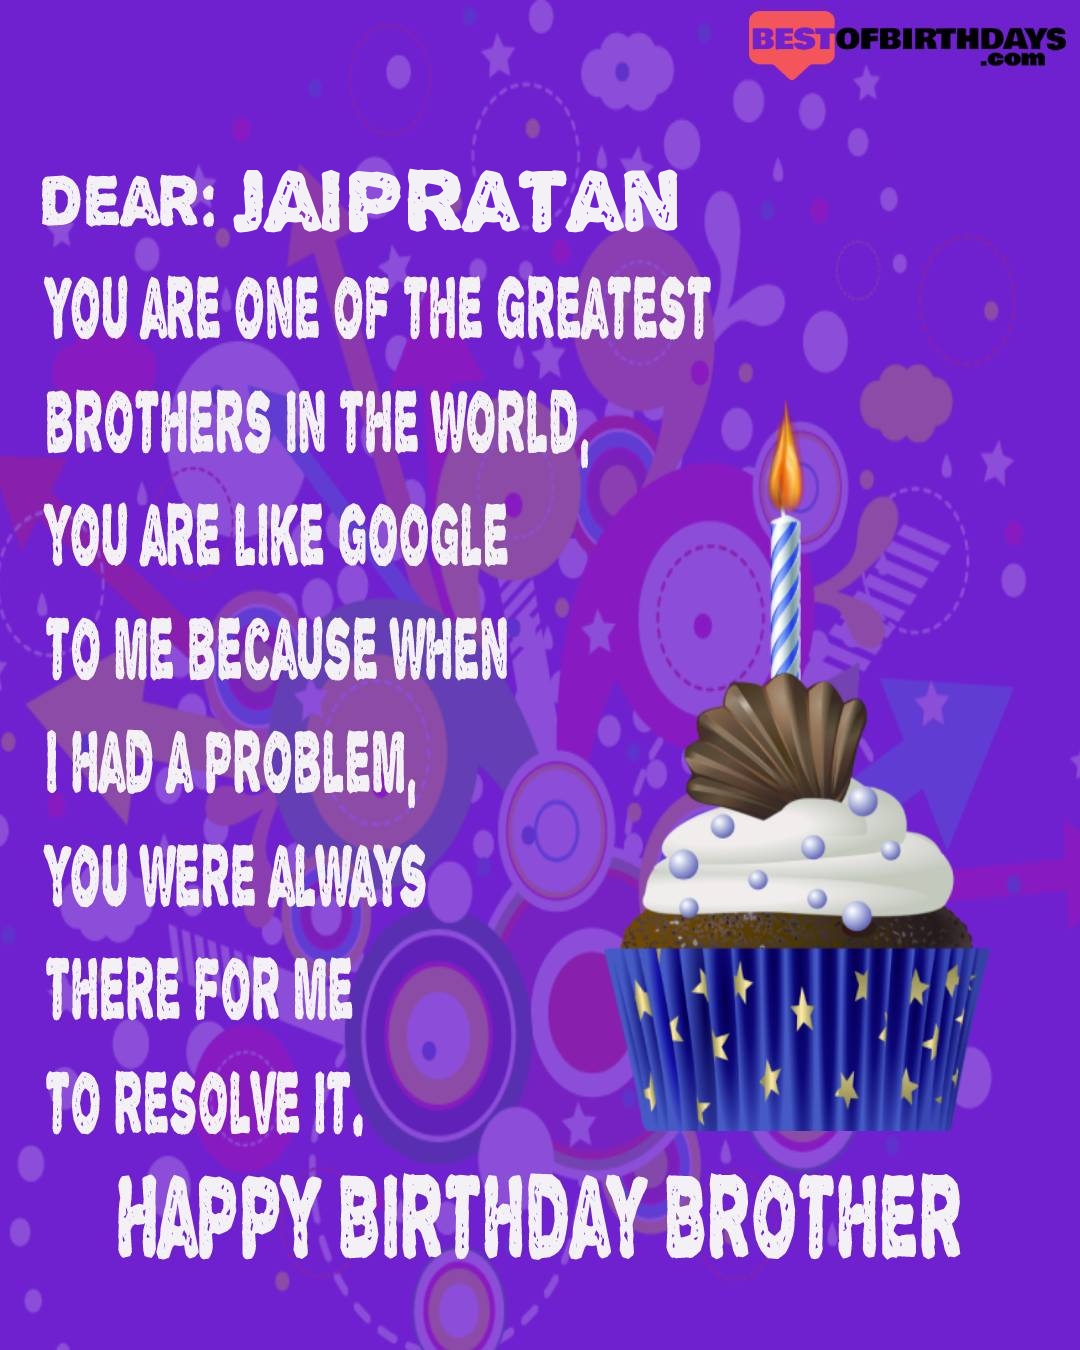 Happy birthday jaipratan bhai brother bro